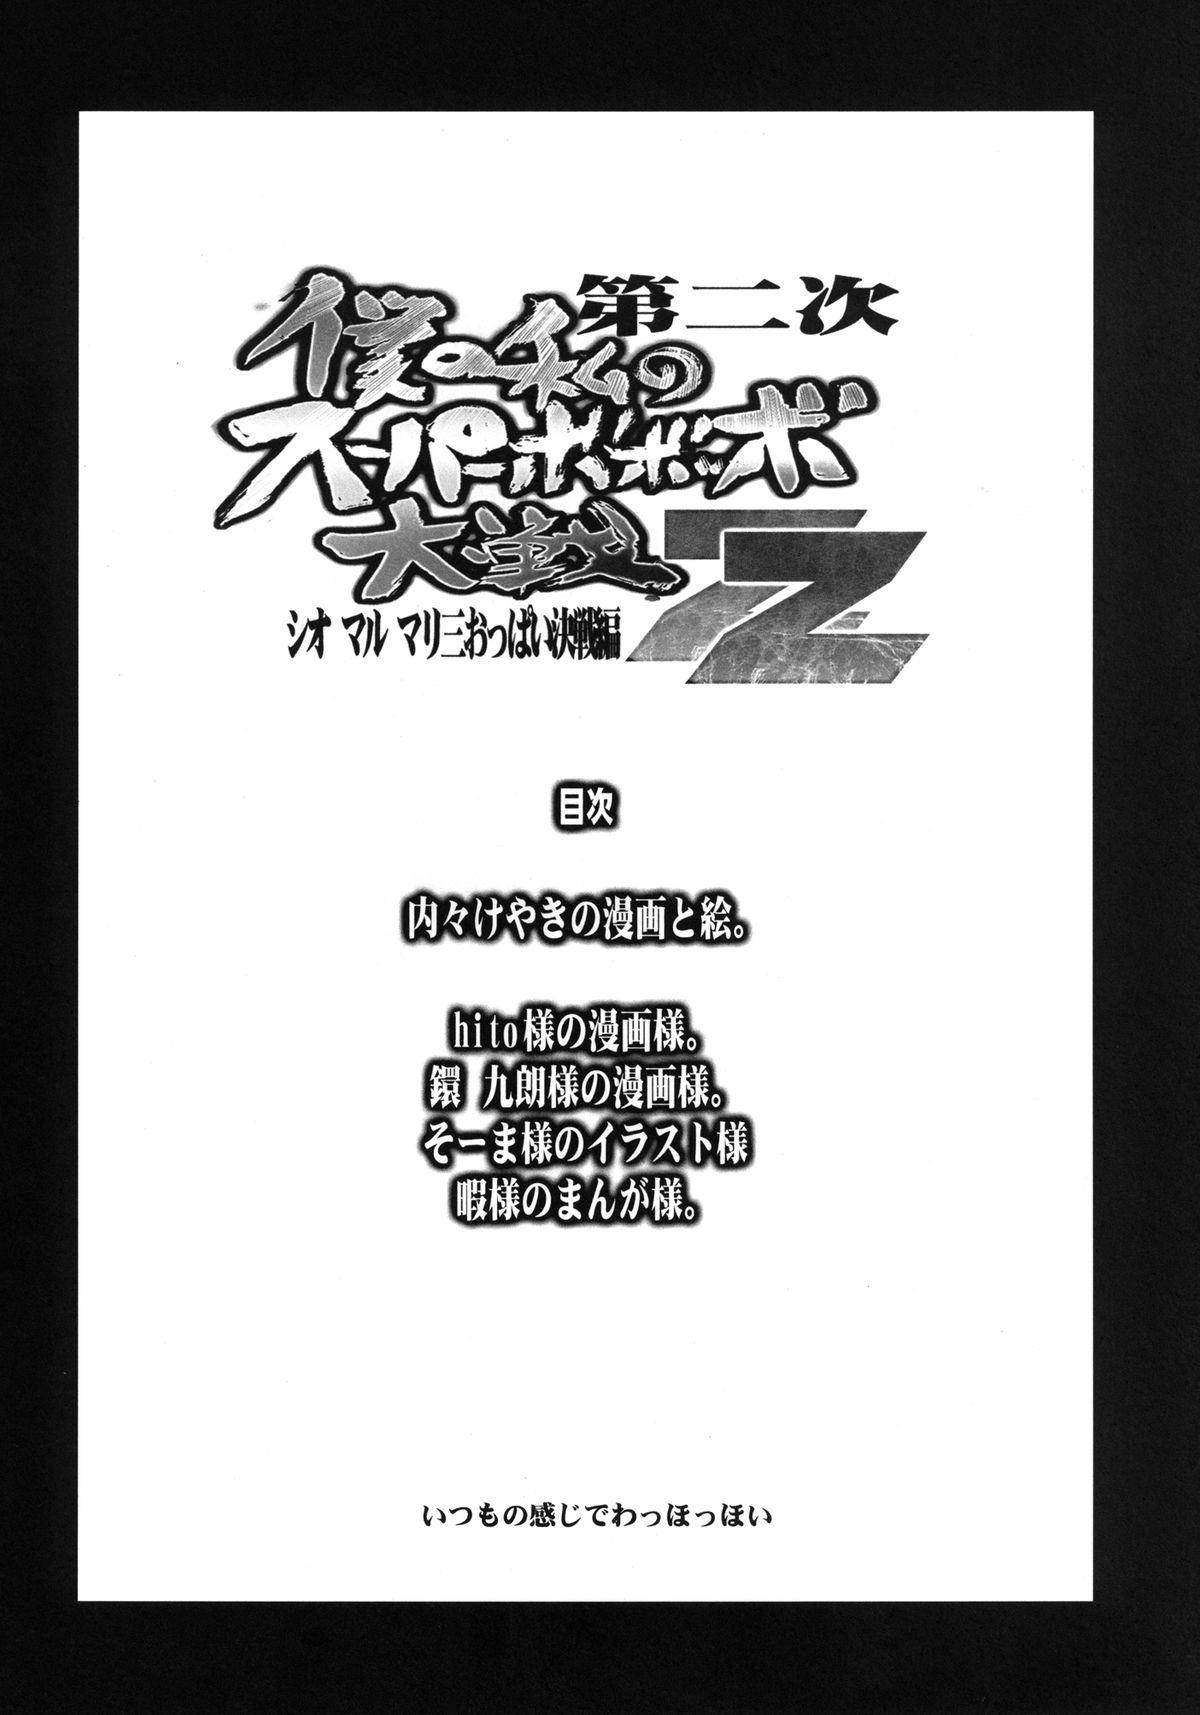 Rough Fuck Dainiji Boku no Watashi no Super Bobobbo Taisen ZZ - Cio Mar Mari 3 Oppai Kessen hen - Super robot wars Holes - Page 4